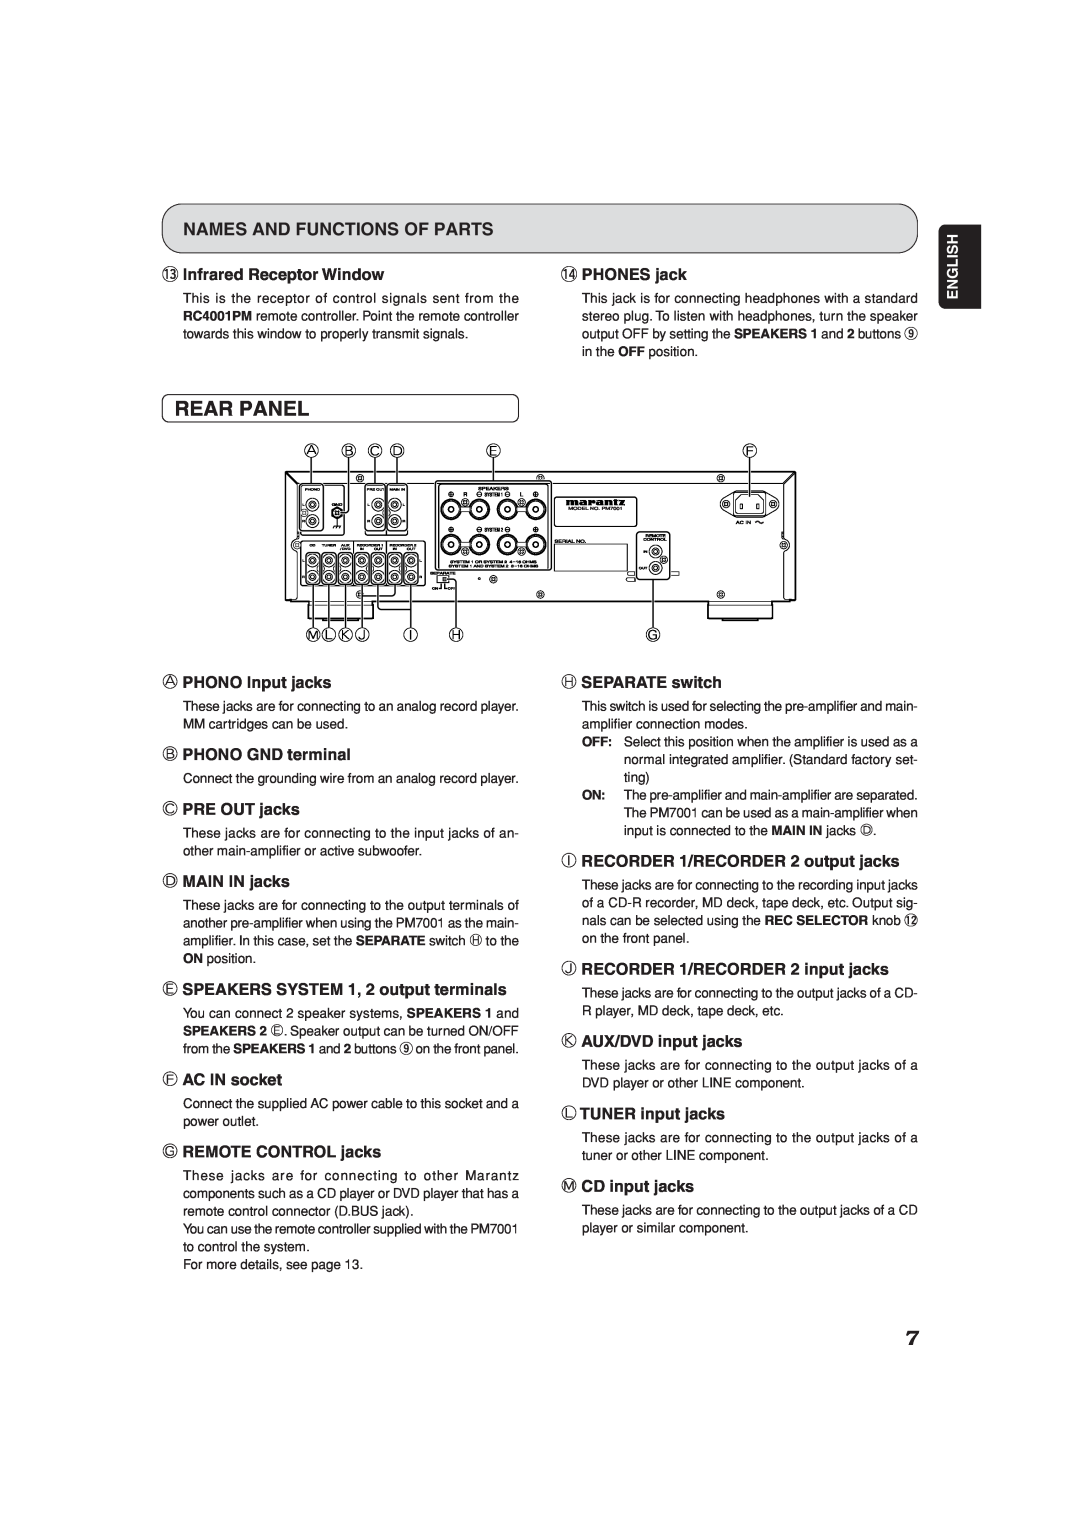 Marantz PM7001KI manual Rear Panel, Names And Functions Of Parts 